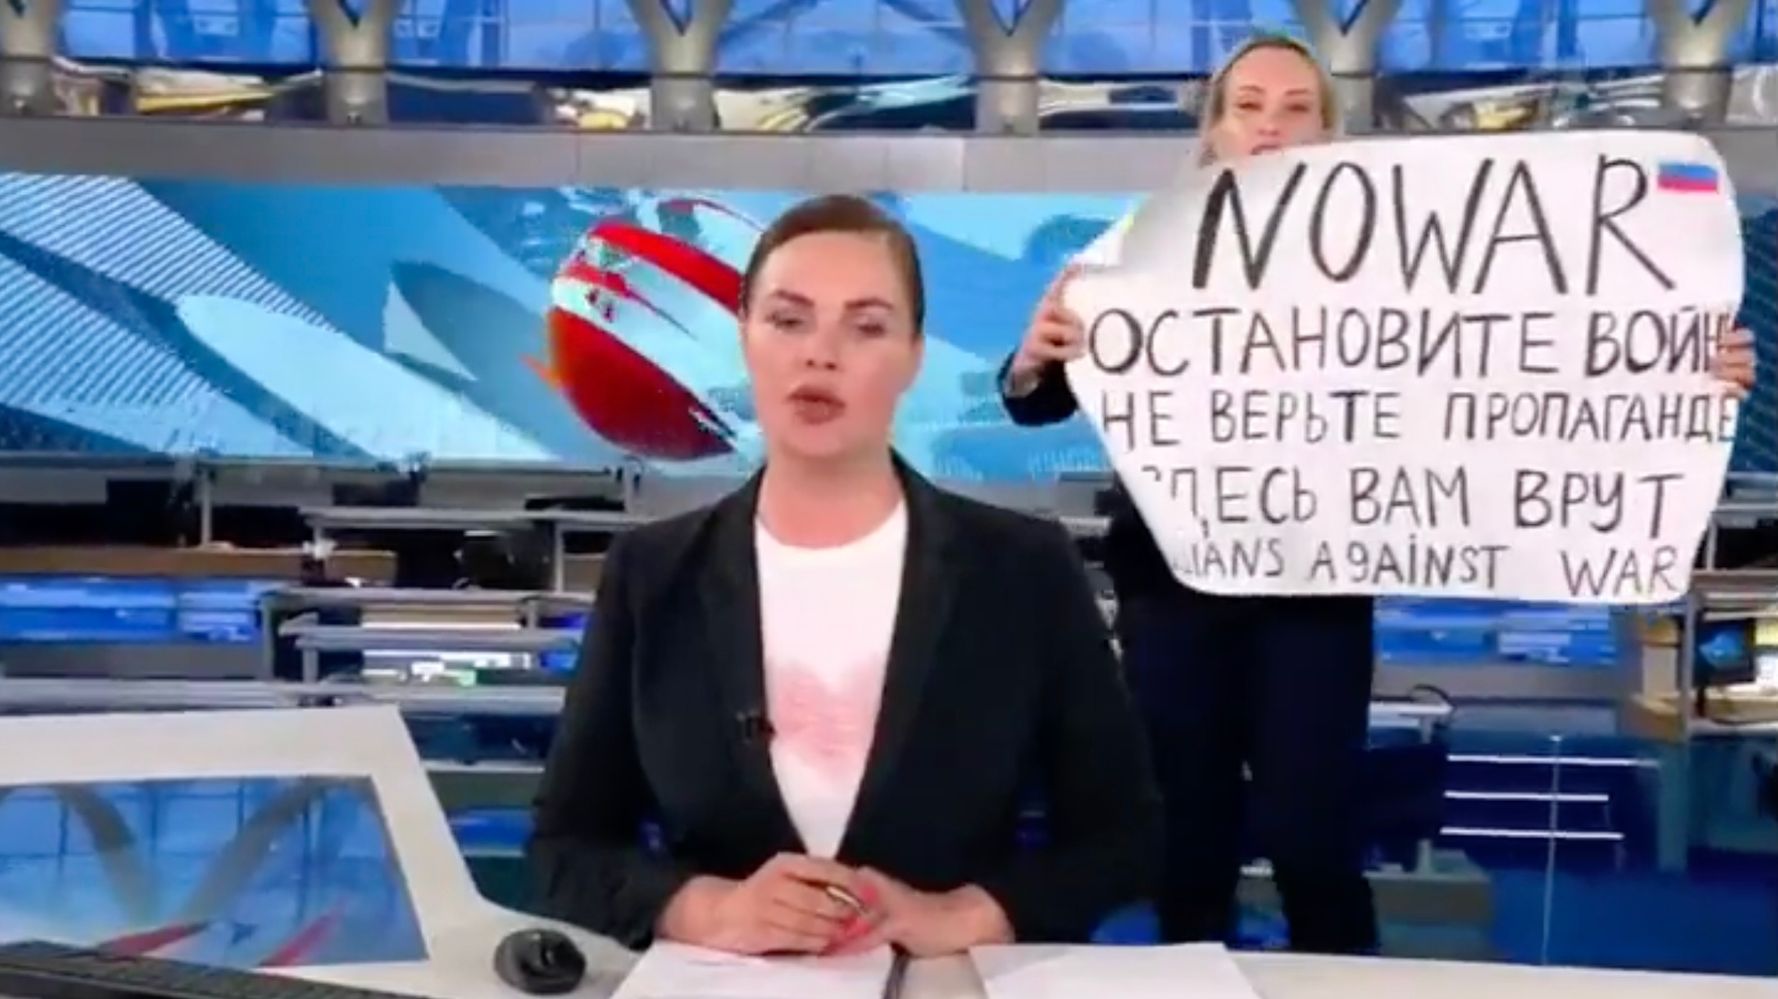 ロシア国営放送でスタッフが乱入し「戦争反対」を叫ぶ。「プロパガンダを信じないで」